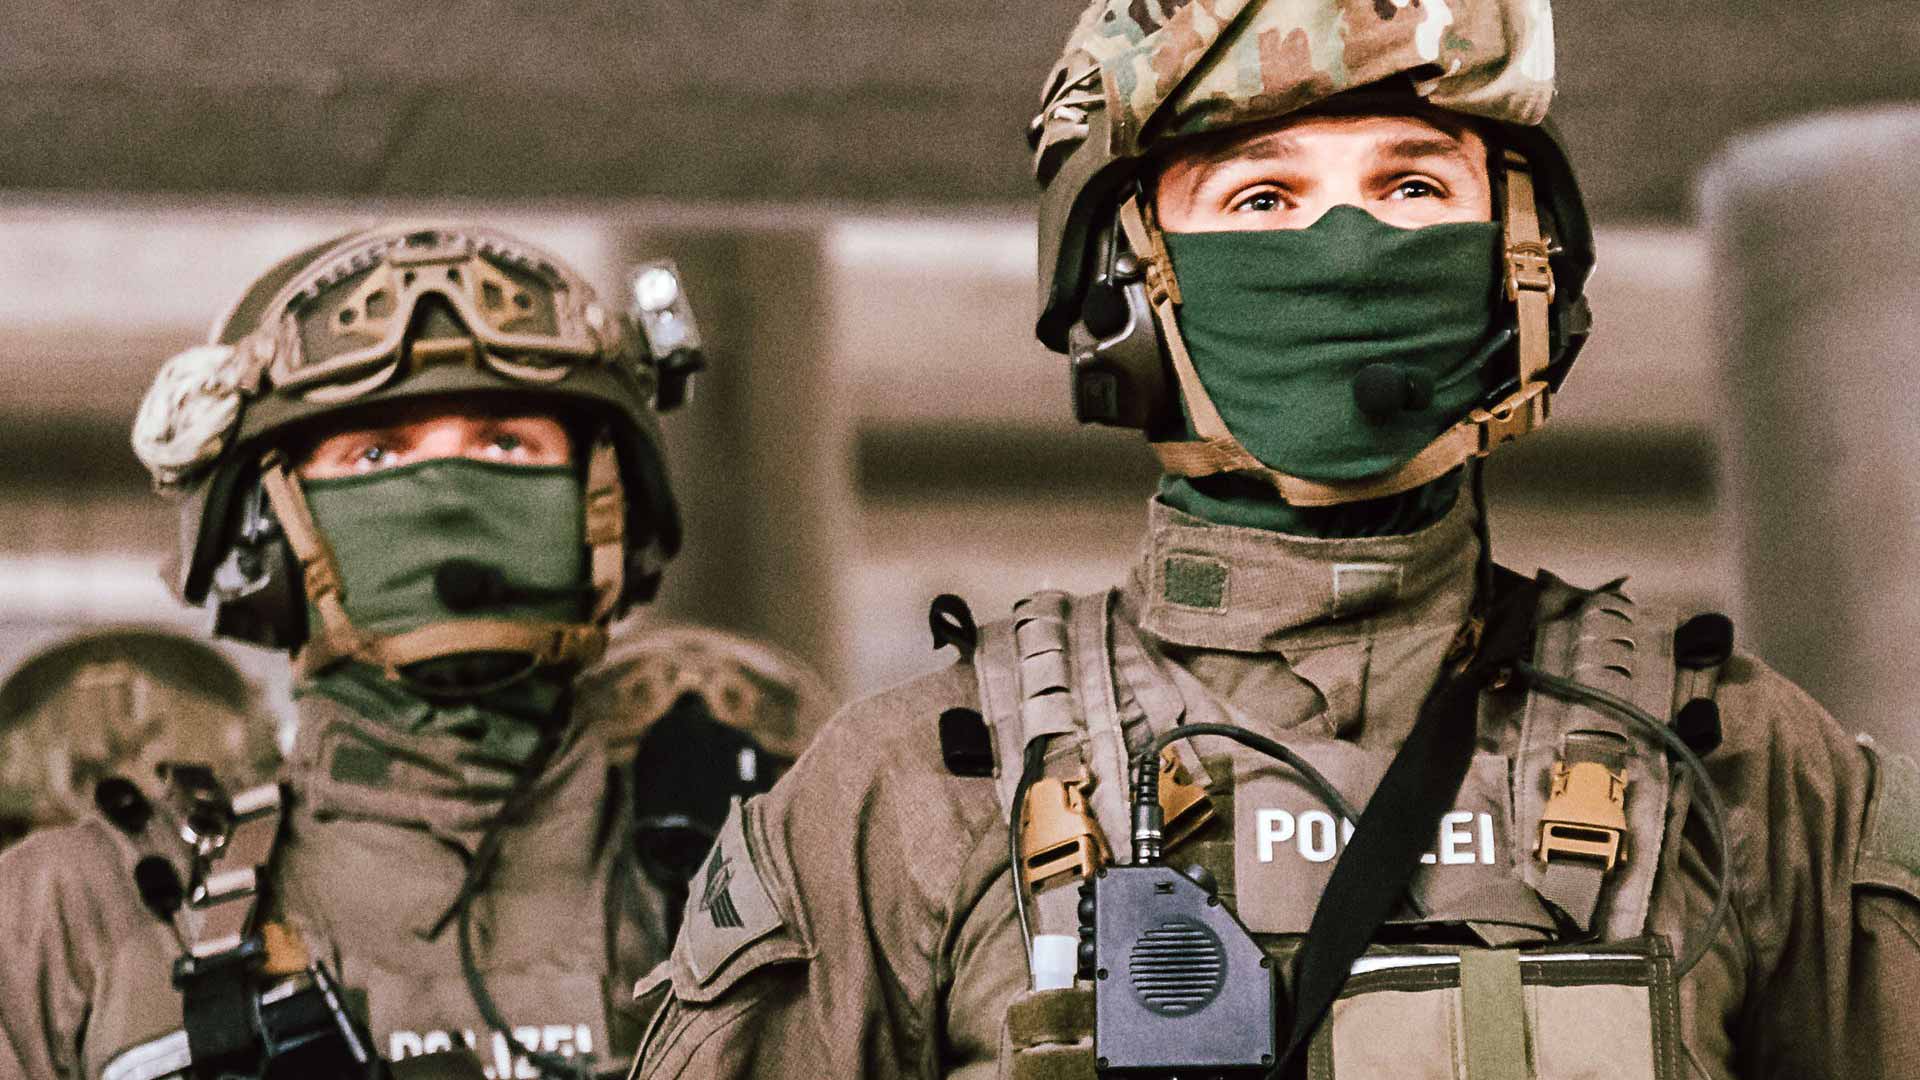 Voll ausgerüstete Spezialkräfte der Polizei Sachsen